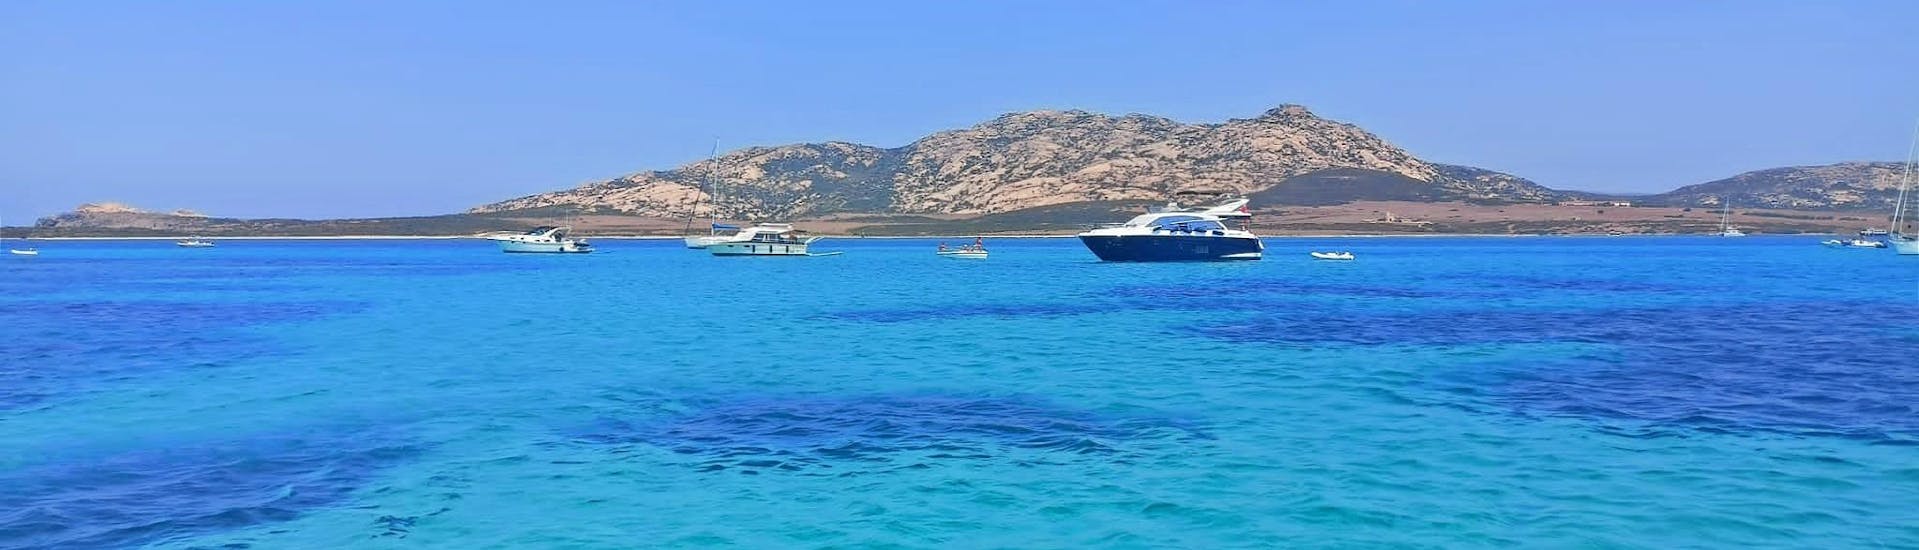 Foto del paesaggio che puoi ammirare a bordo con Asinara's Latin Sails durante una gita in barca a vela al Parco dell'Asinara.